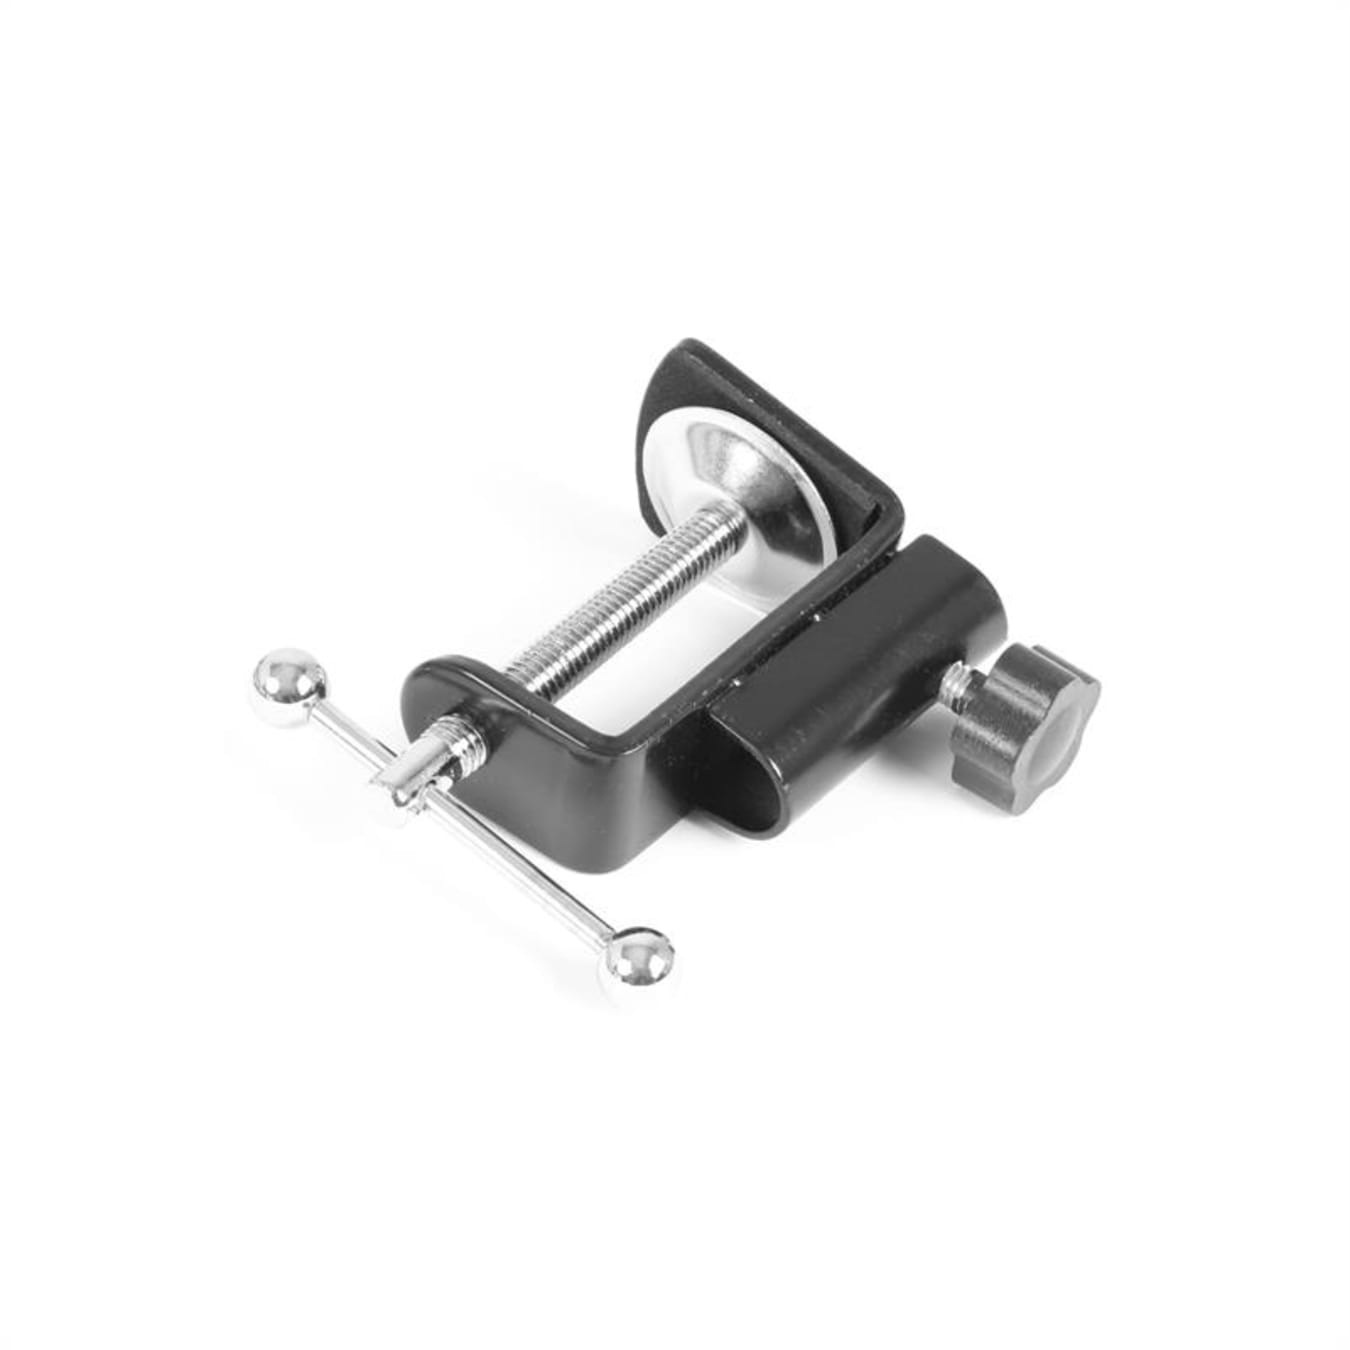 August REC100 Micro USB Condensateur avec Bras articulé - Noir